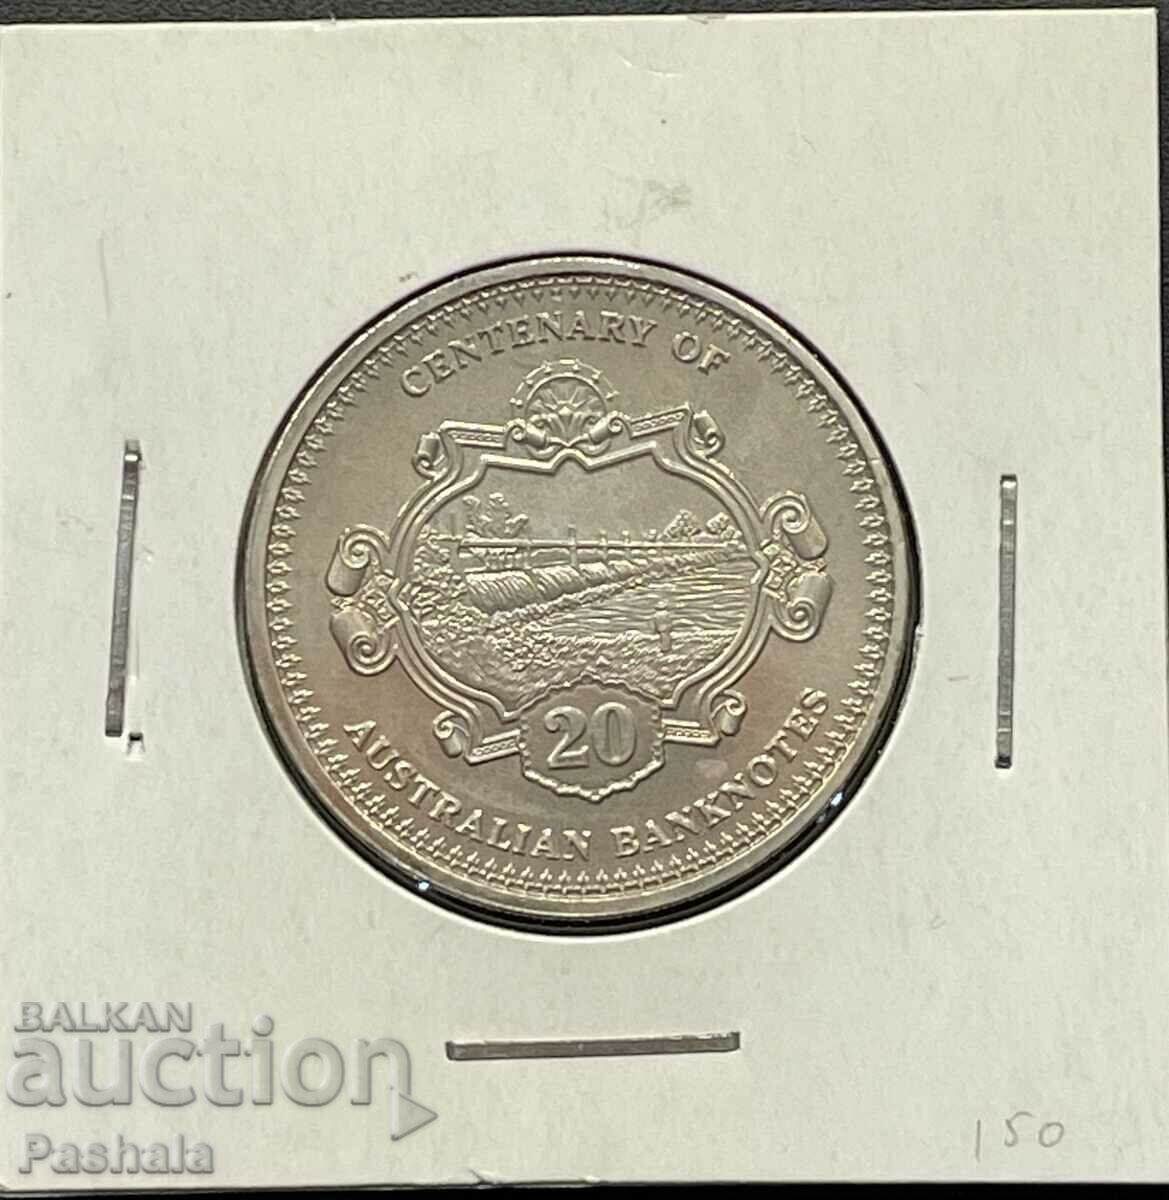 Αυστραλία 20 σεντς 2013